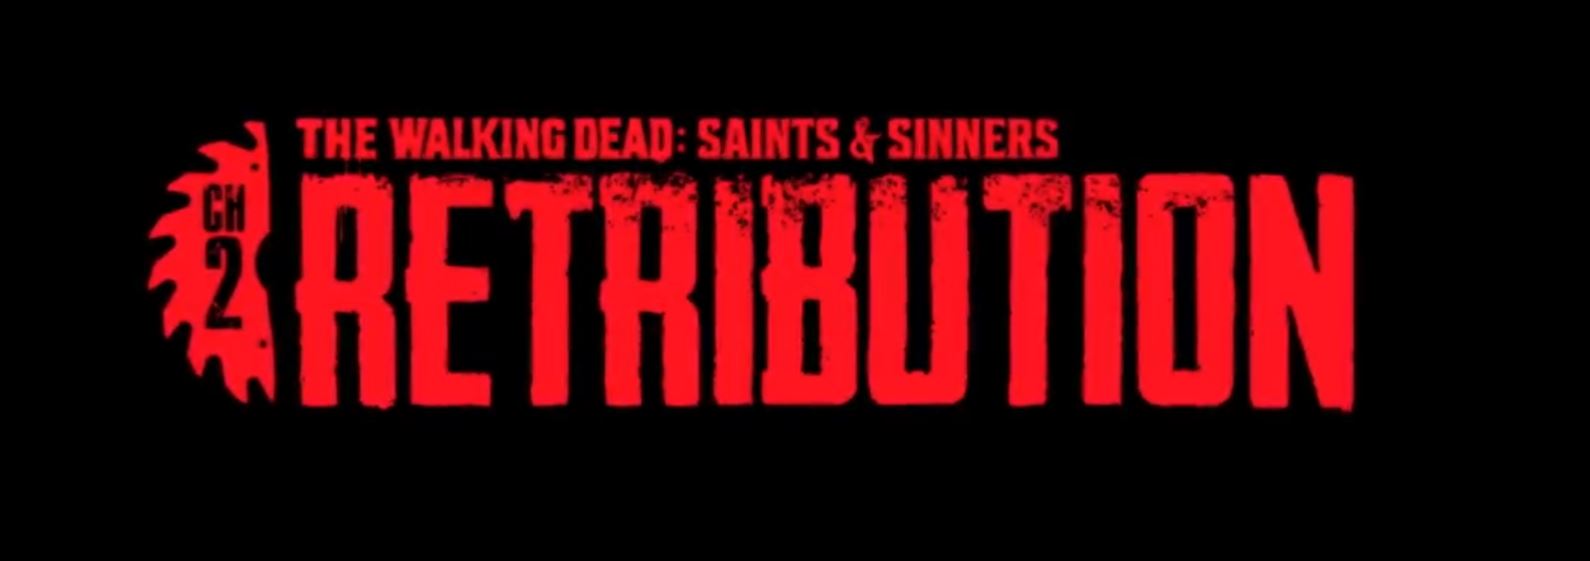 Walking dead saints sinners chapter 2 retribution. The Walking Dead: Saints & Sinners – Chapter 2: Retribution. The Walking Dead Saints Sinners коды сейфов.